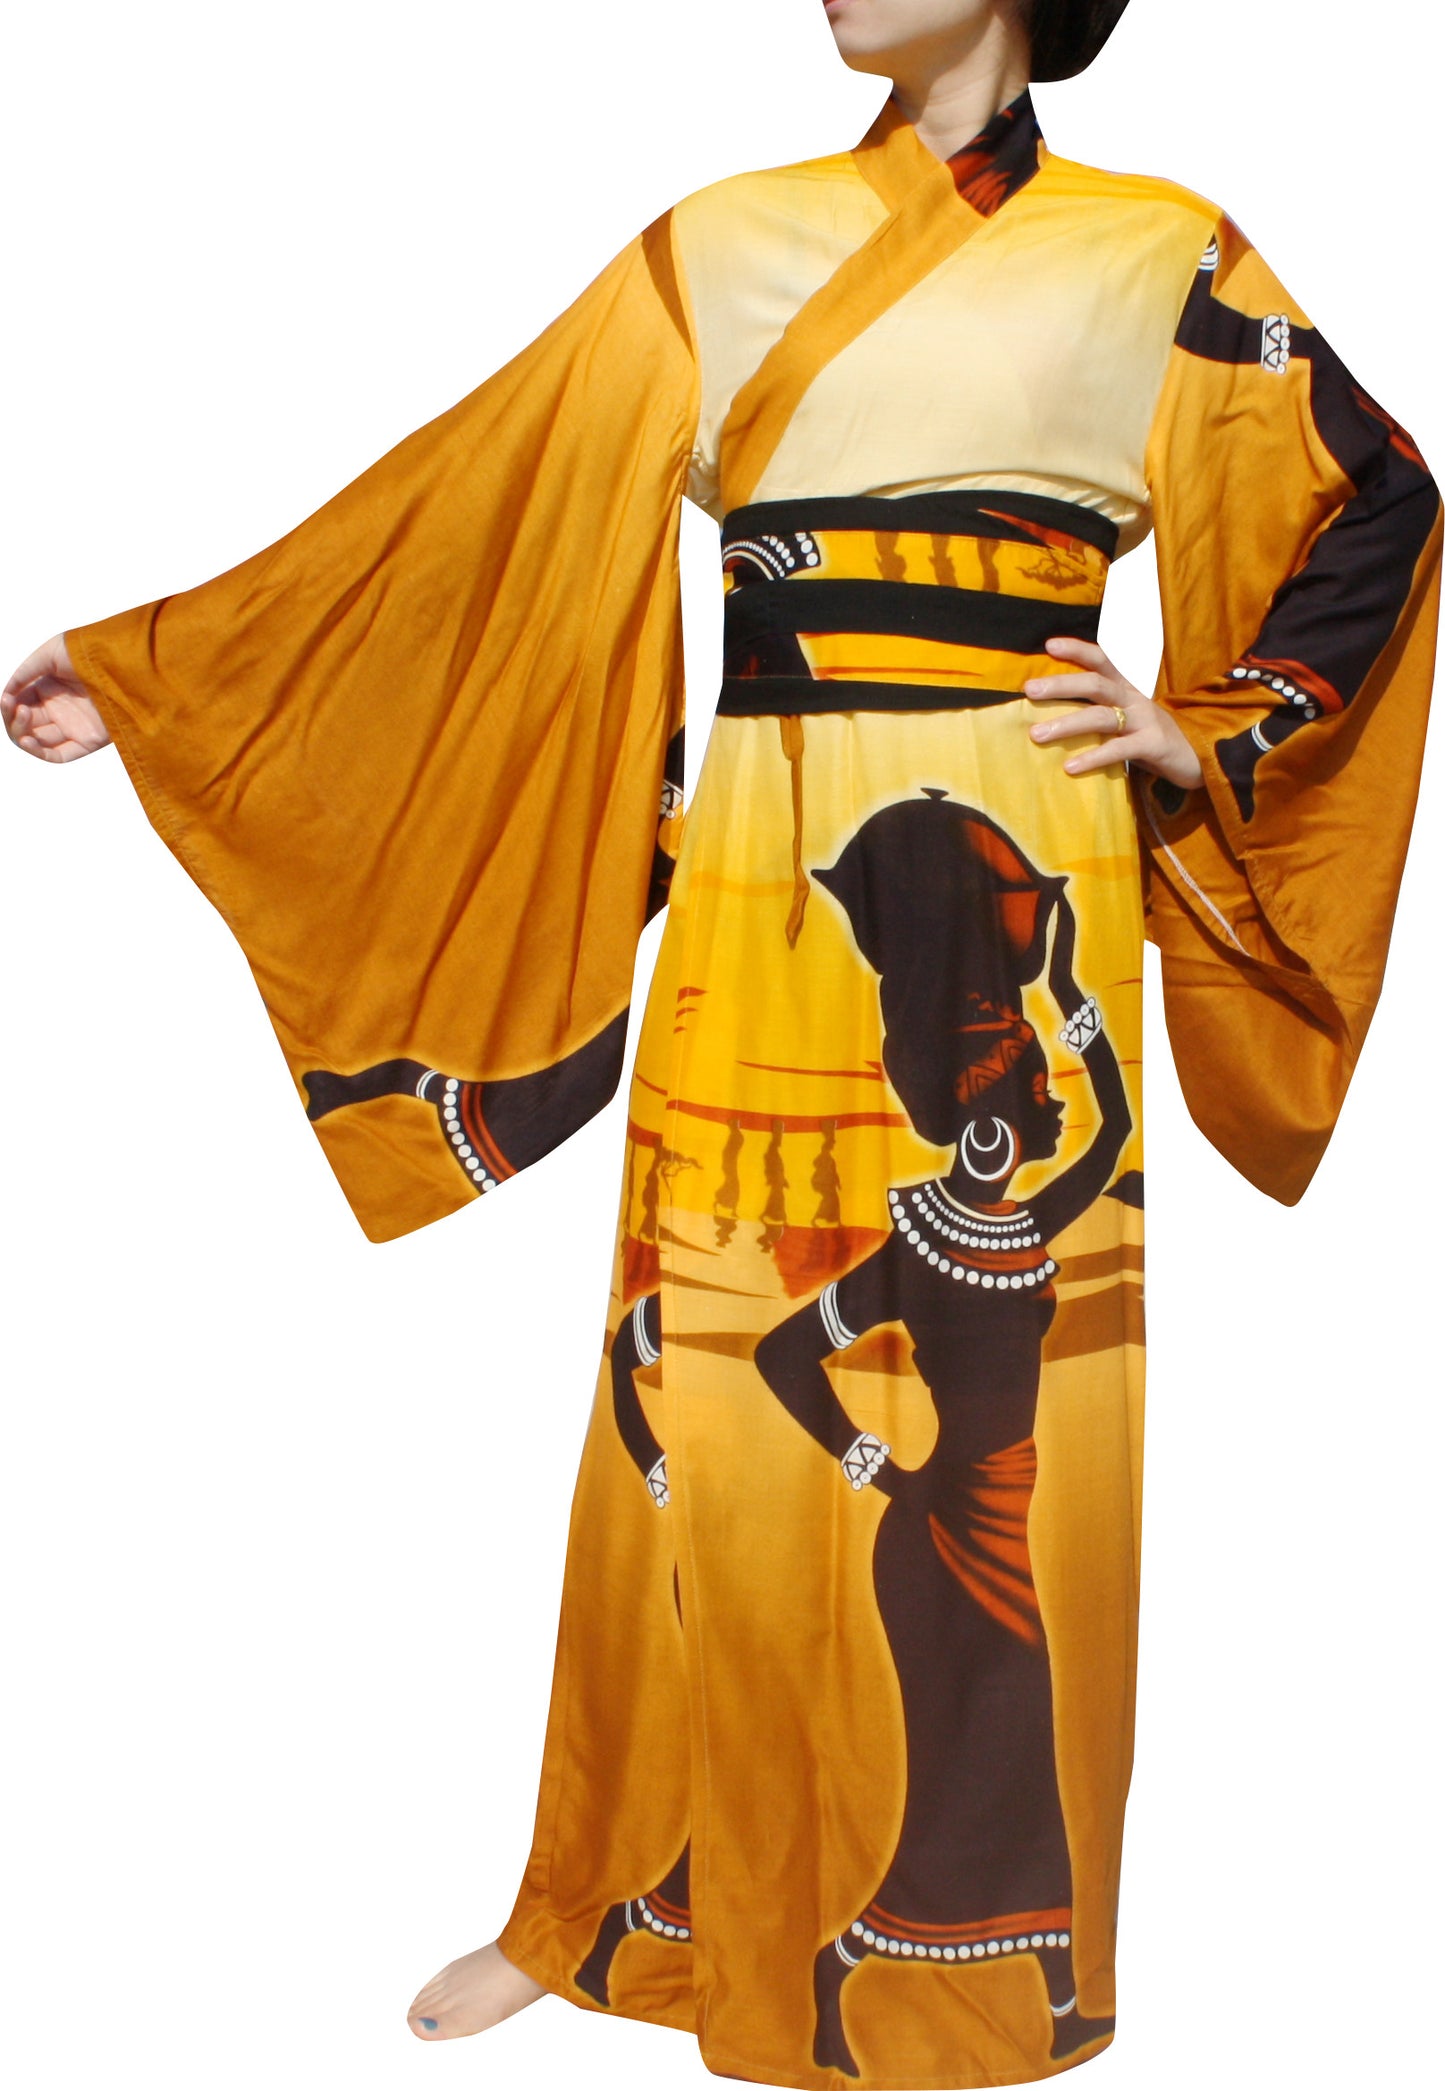 RaanPahMuang Long Kimono Robes For Women Japanese Sleepwear Robe